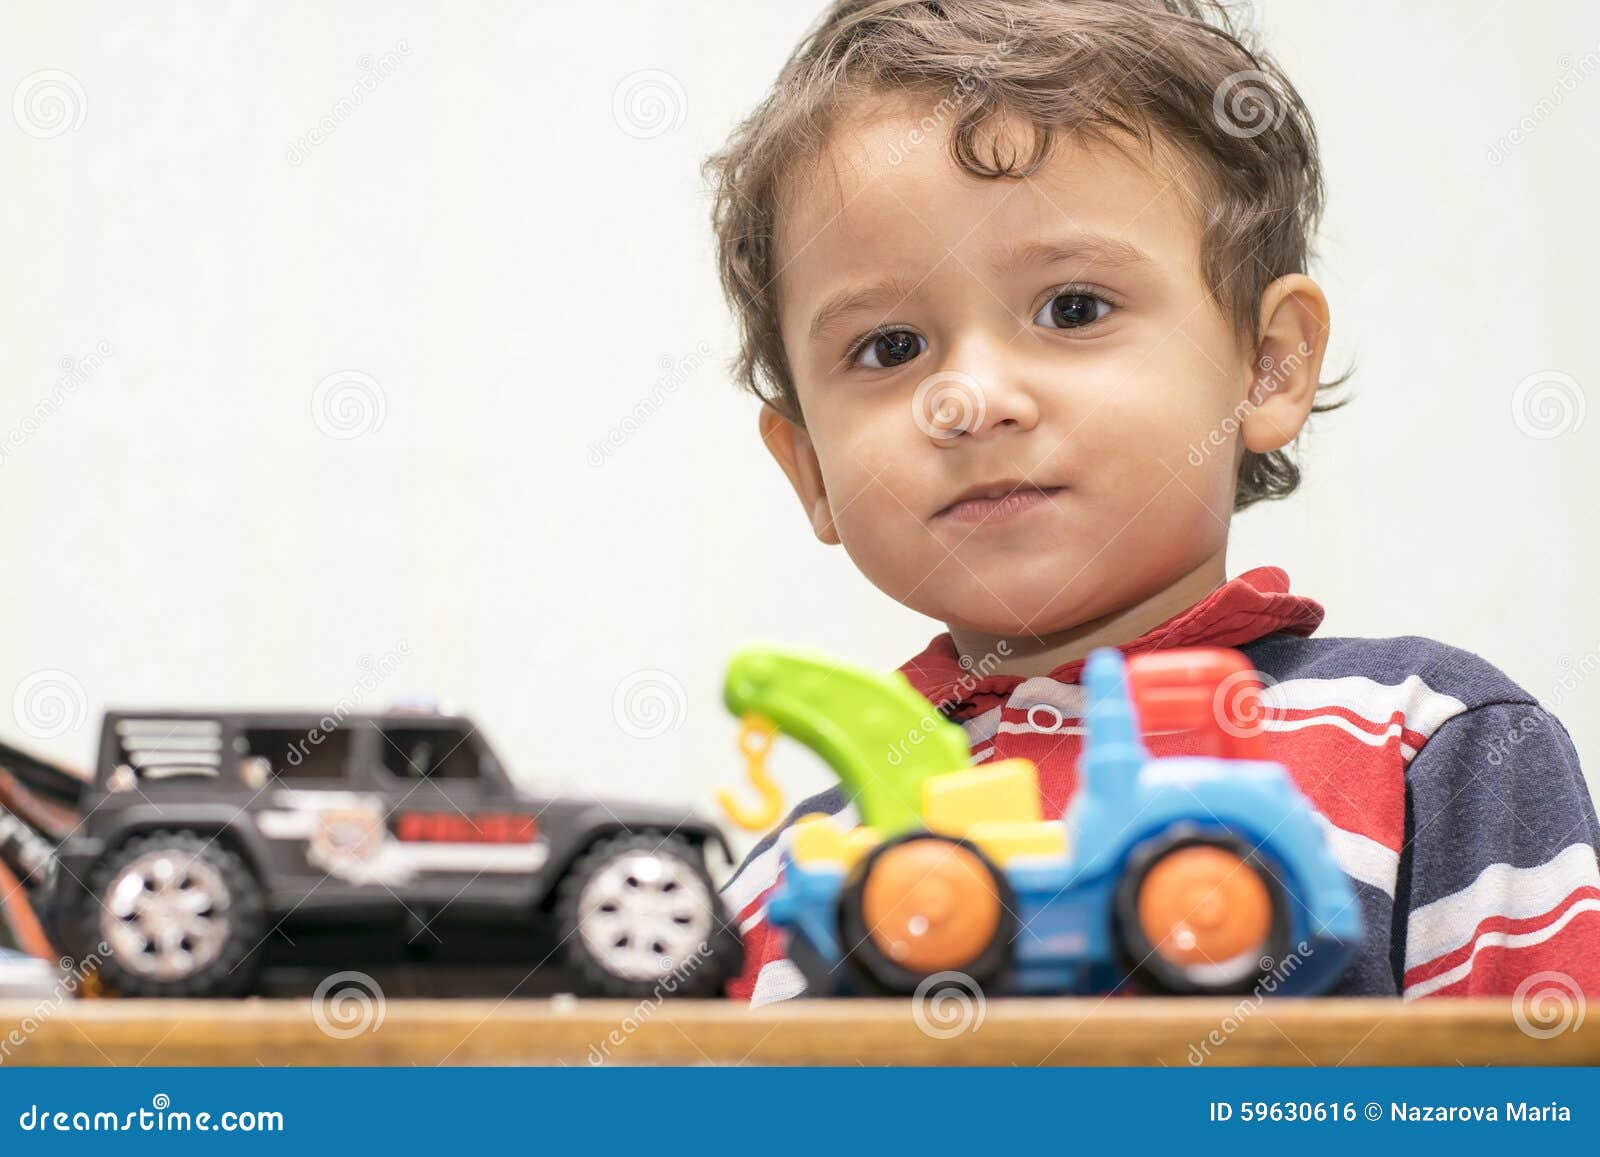 Песни мальчик на машине. Американский мальчик играет в игрушки. Машинки для мальчиков в магазине. Сапочки мальчик машина. Мальчик с машинкой в руках на кровати.